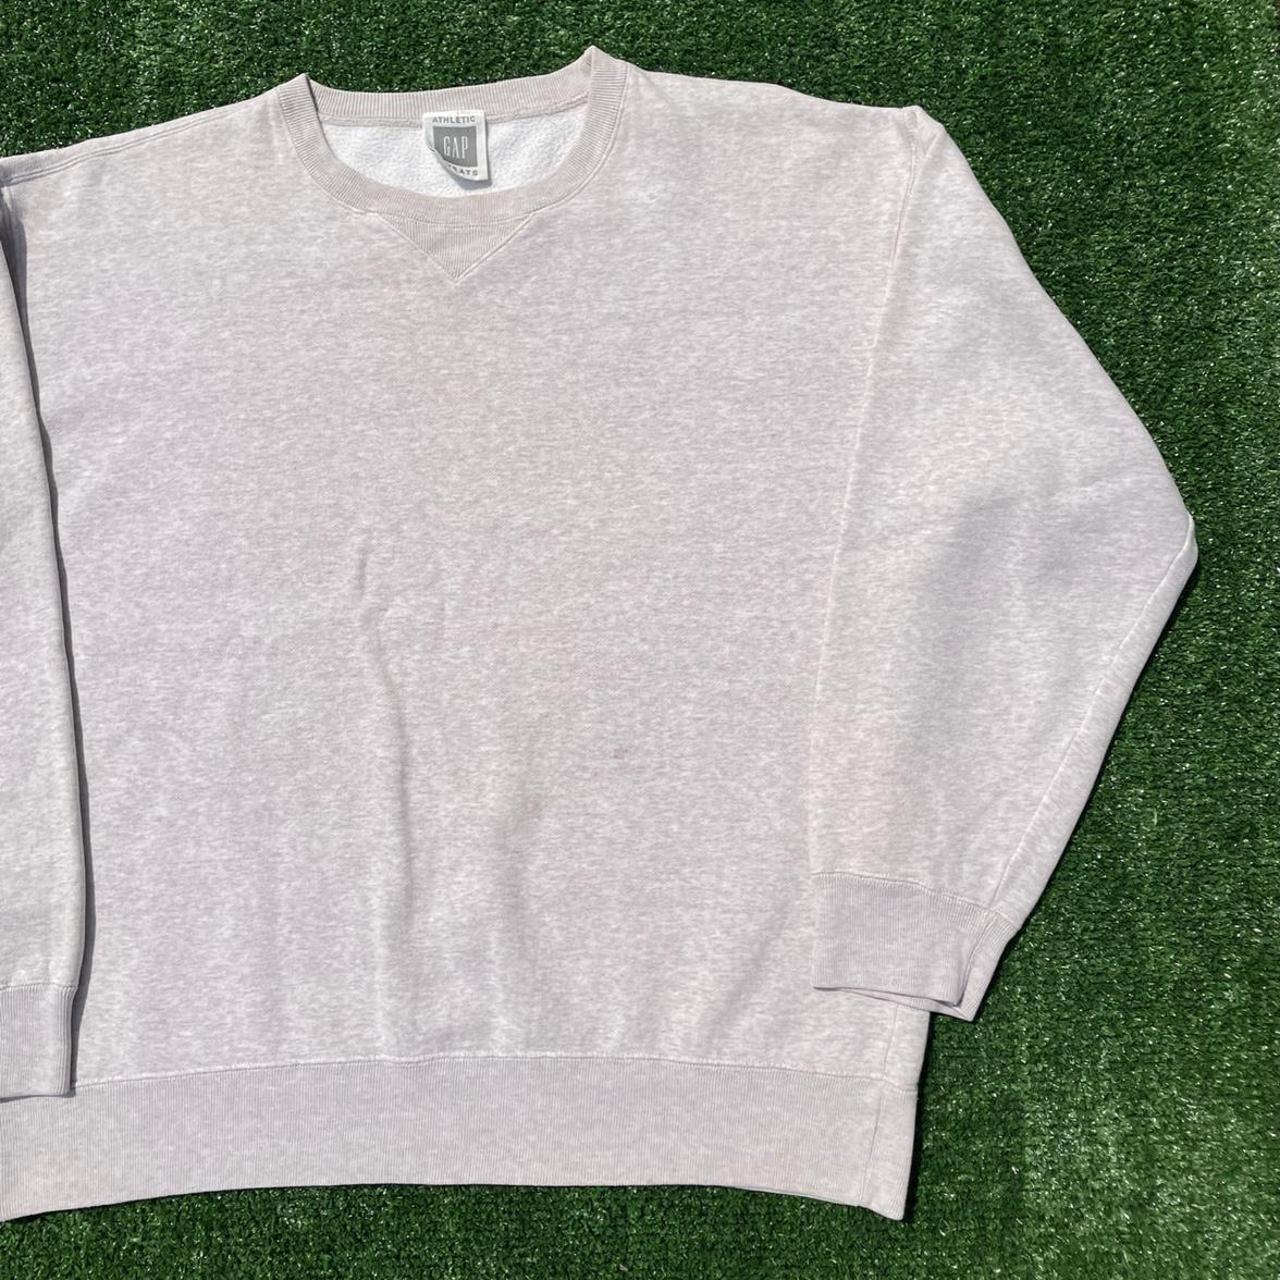 Men’s vintage cream Gap premium sweatshirt in great... - Depop